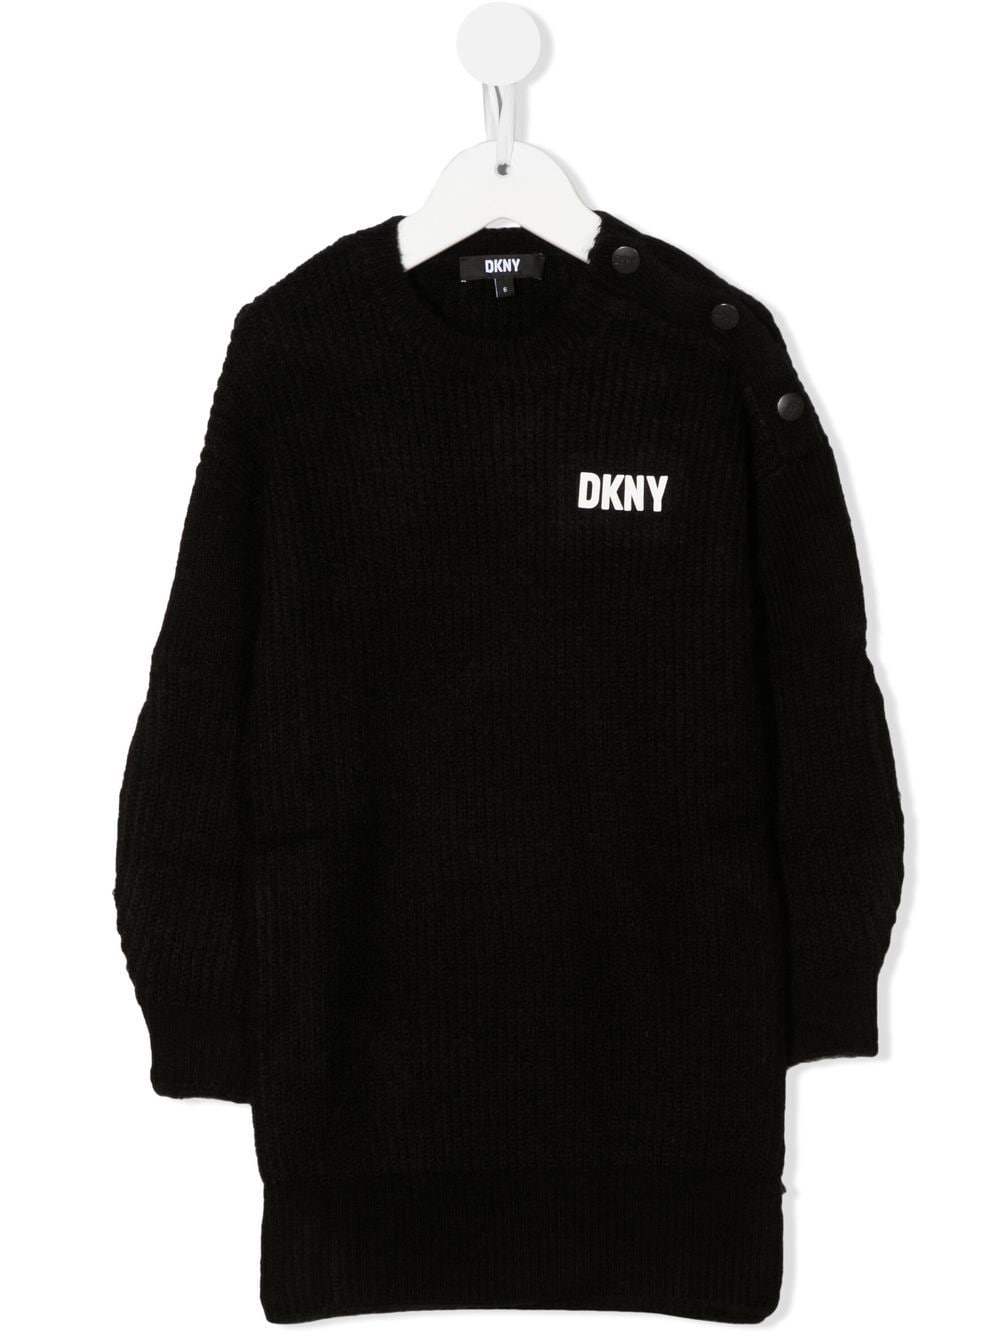 Dkny Kids logo-print knitted jumper dress - Black von Dkny Kids